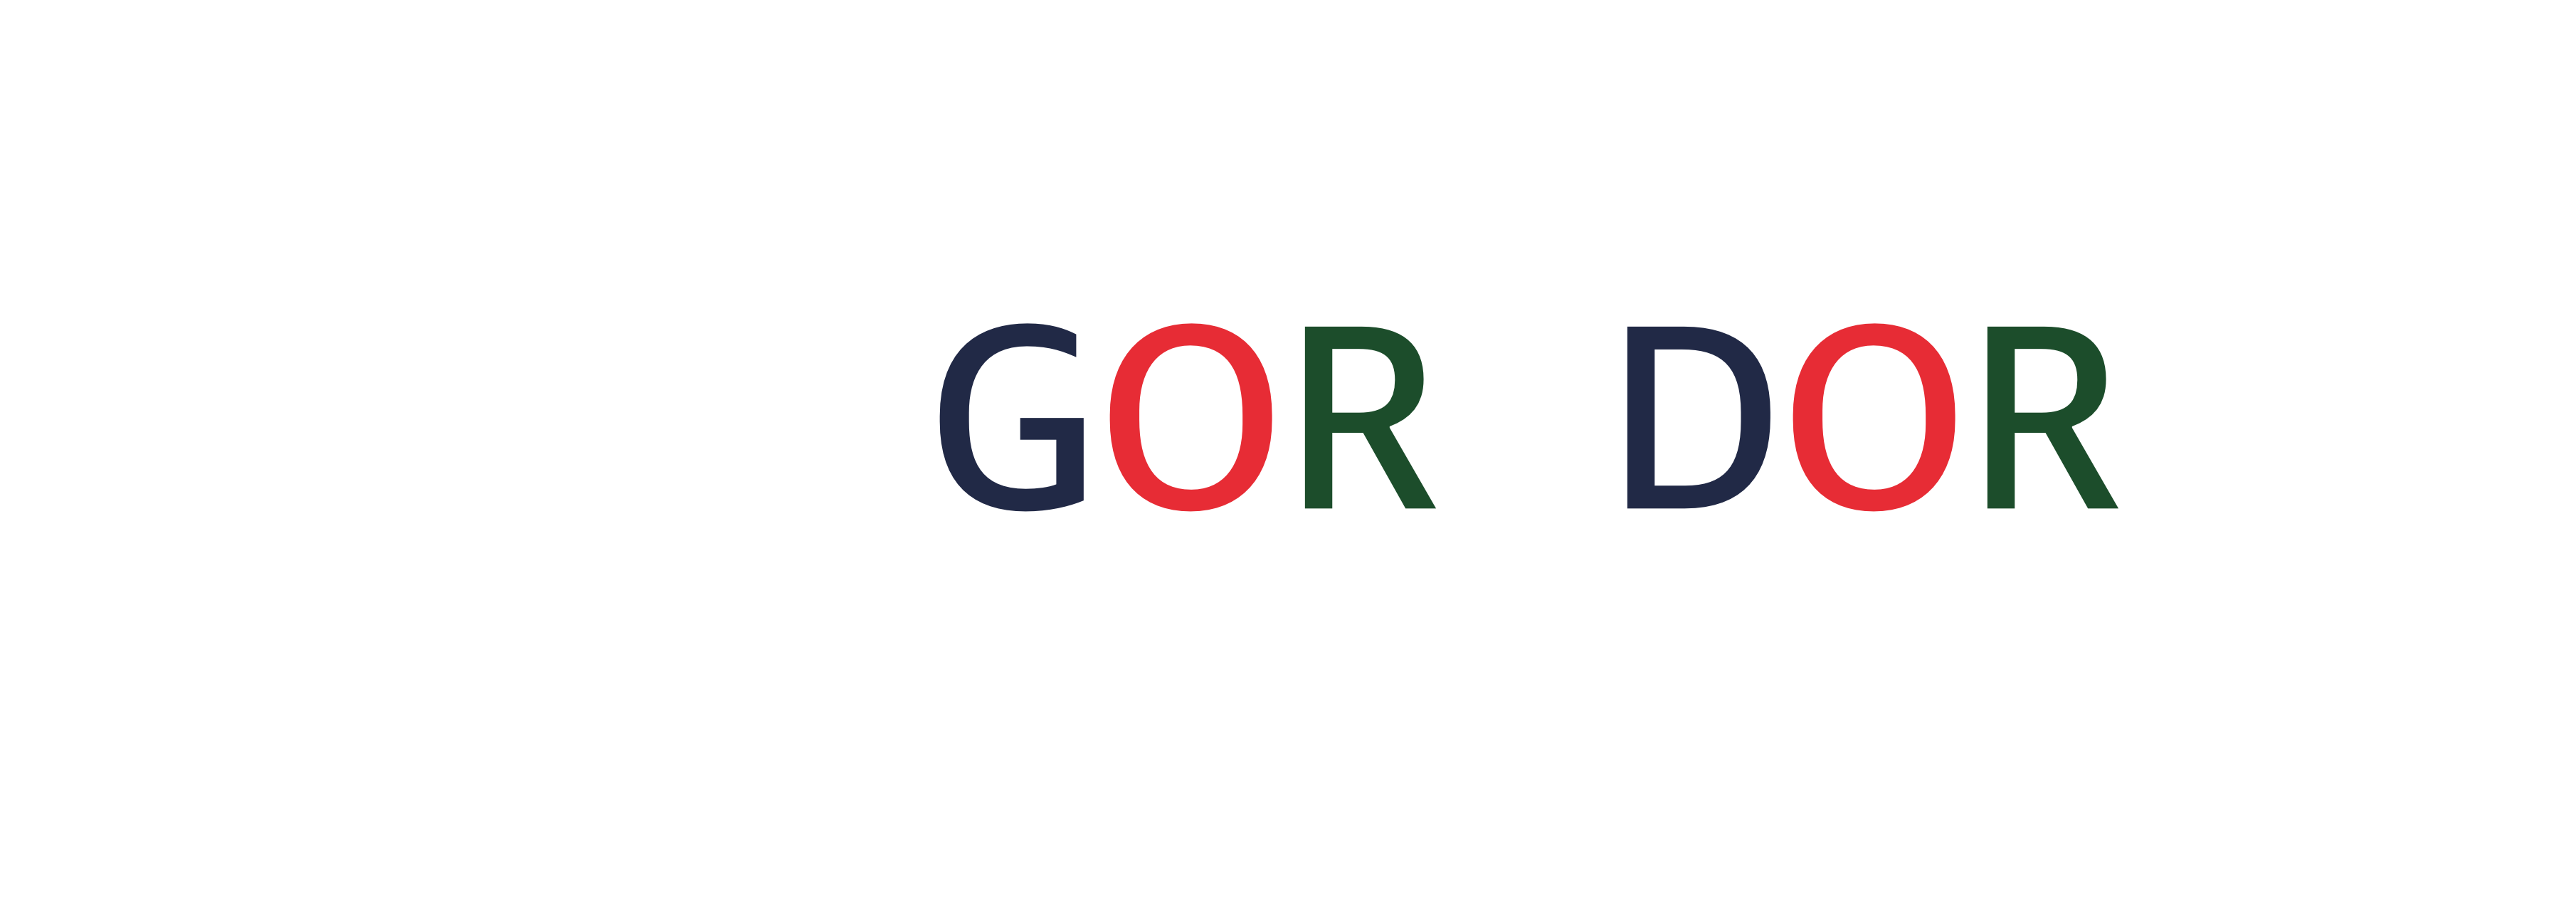 https://www.goradora.com